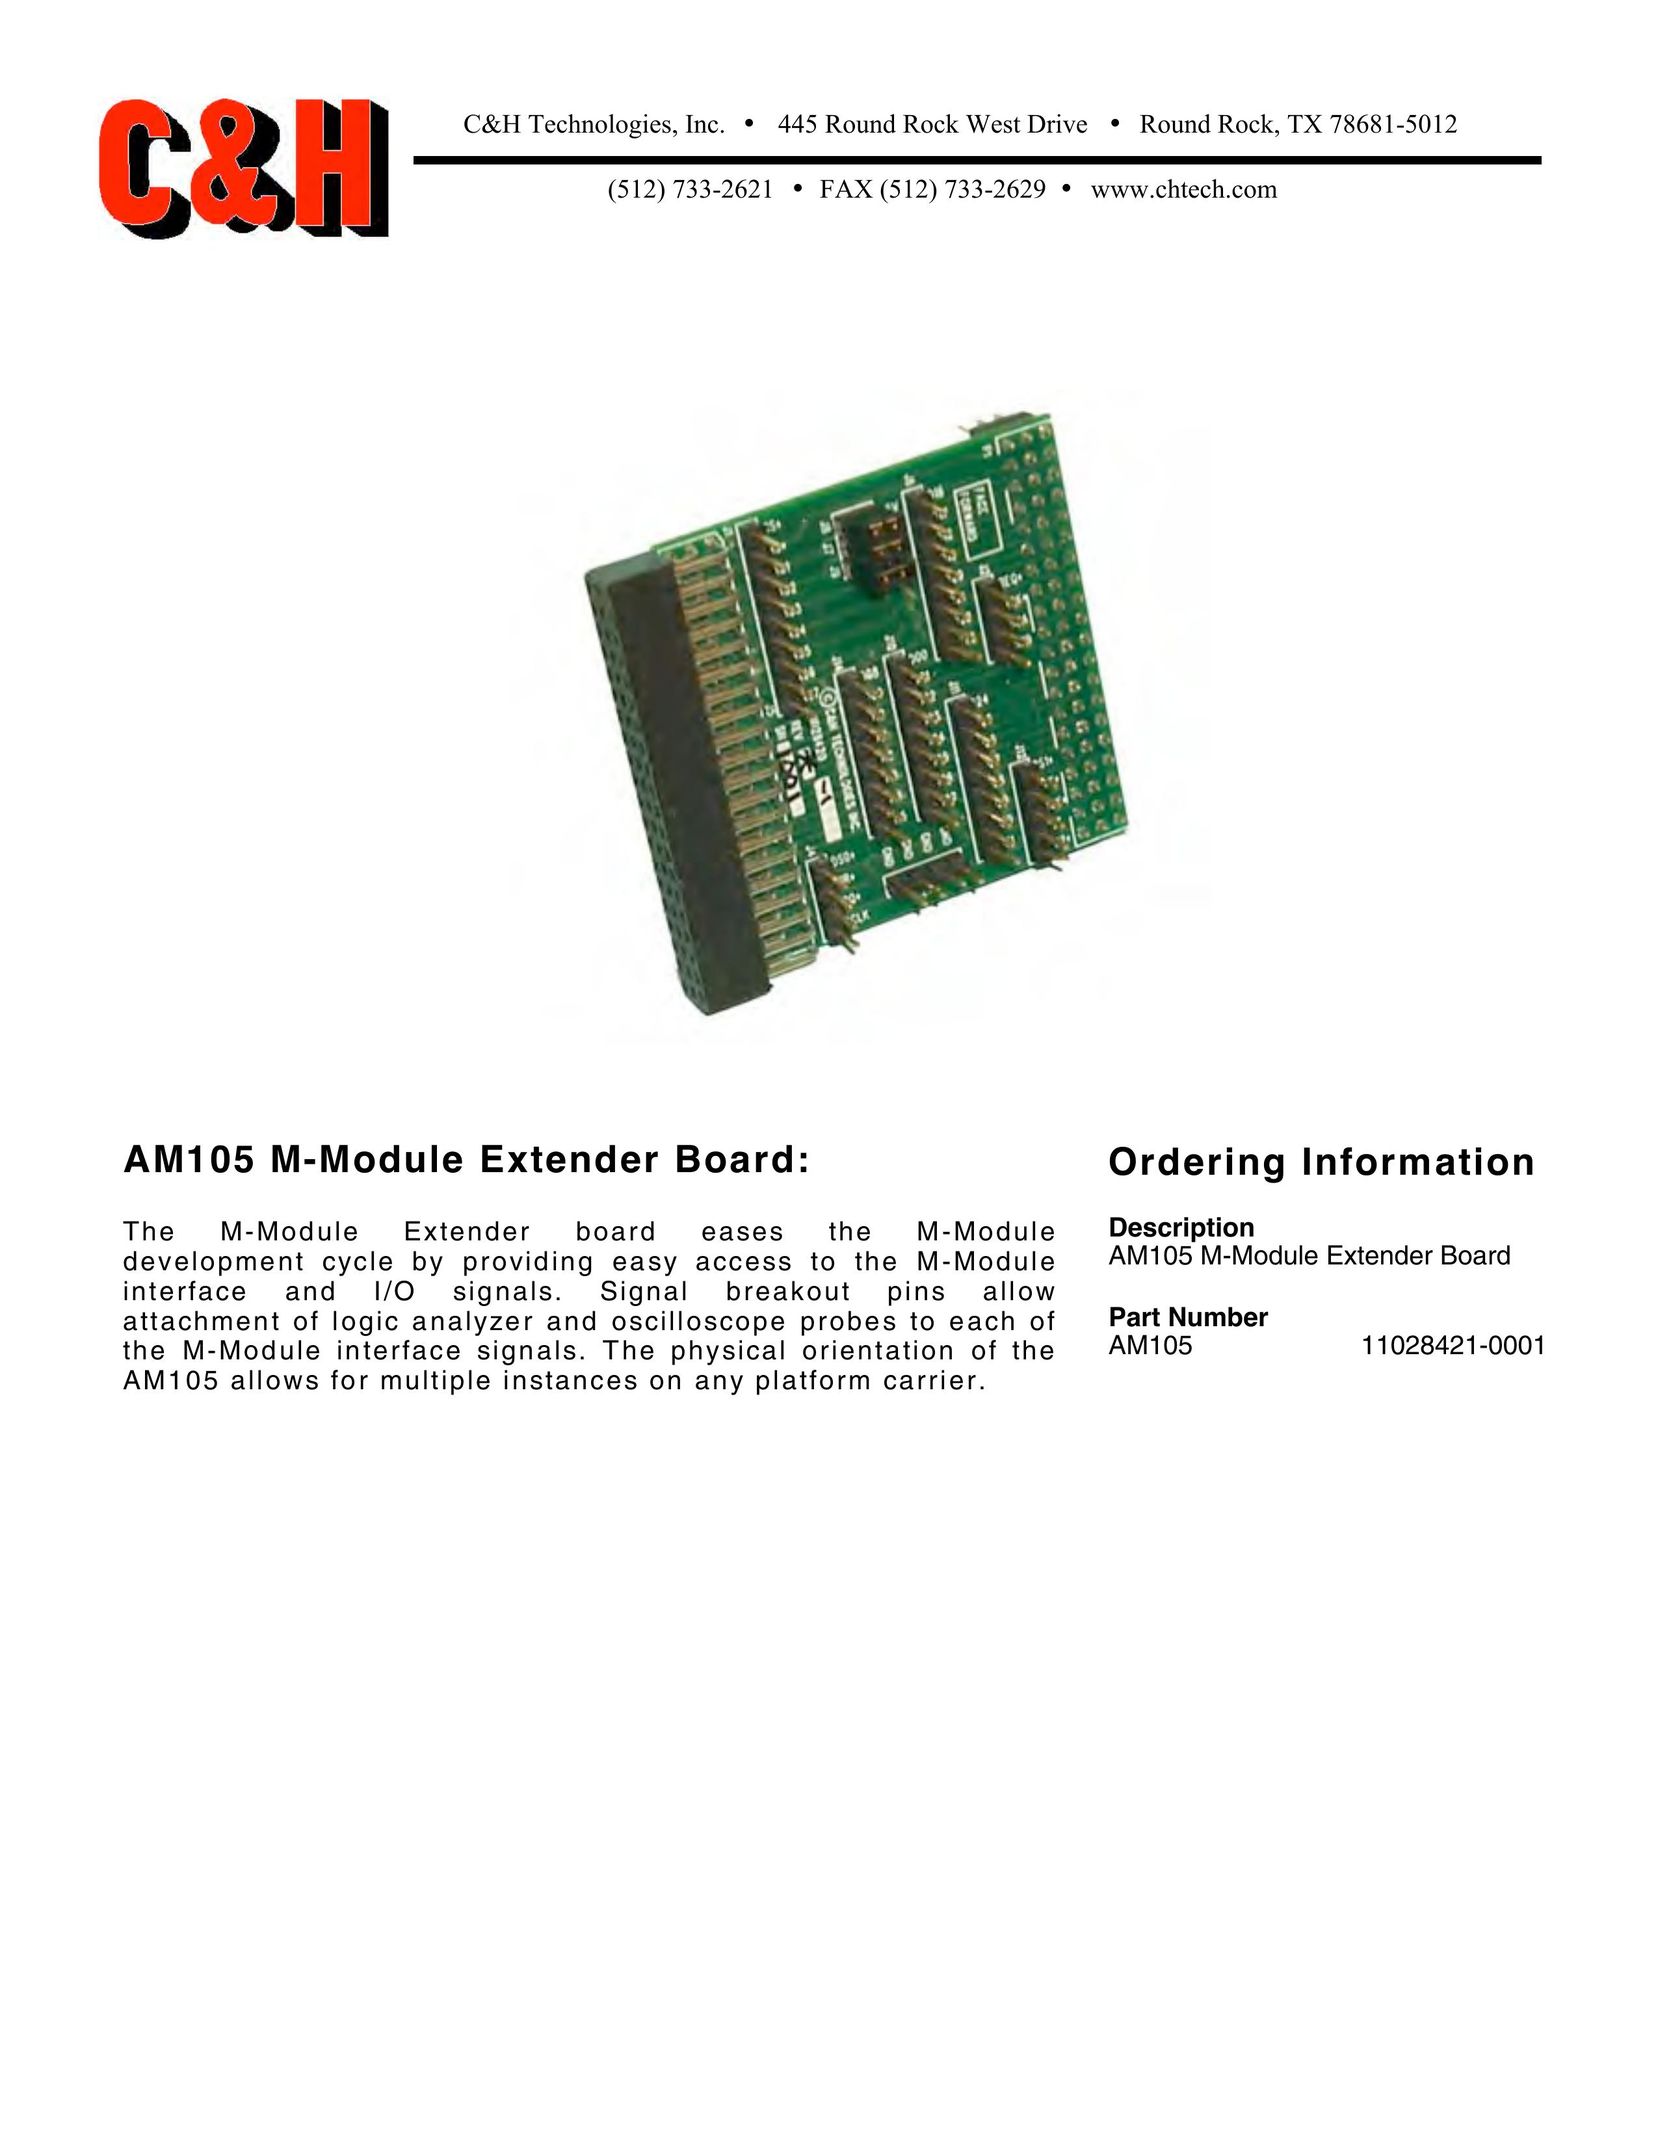 CH Tech AM105 Network Card User Manual